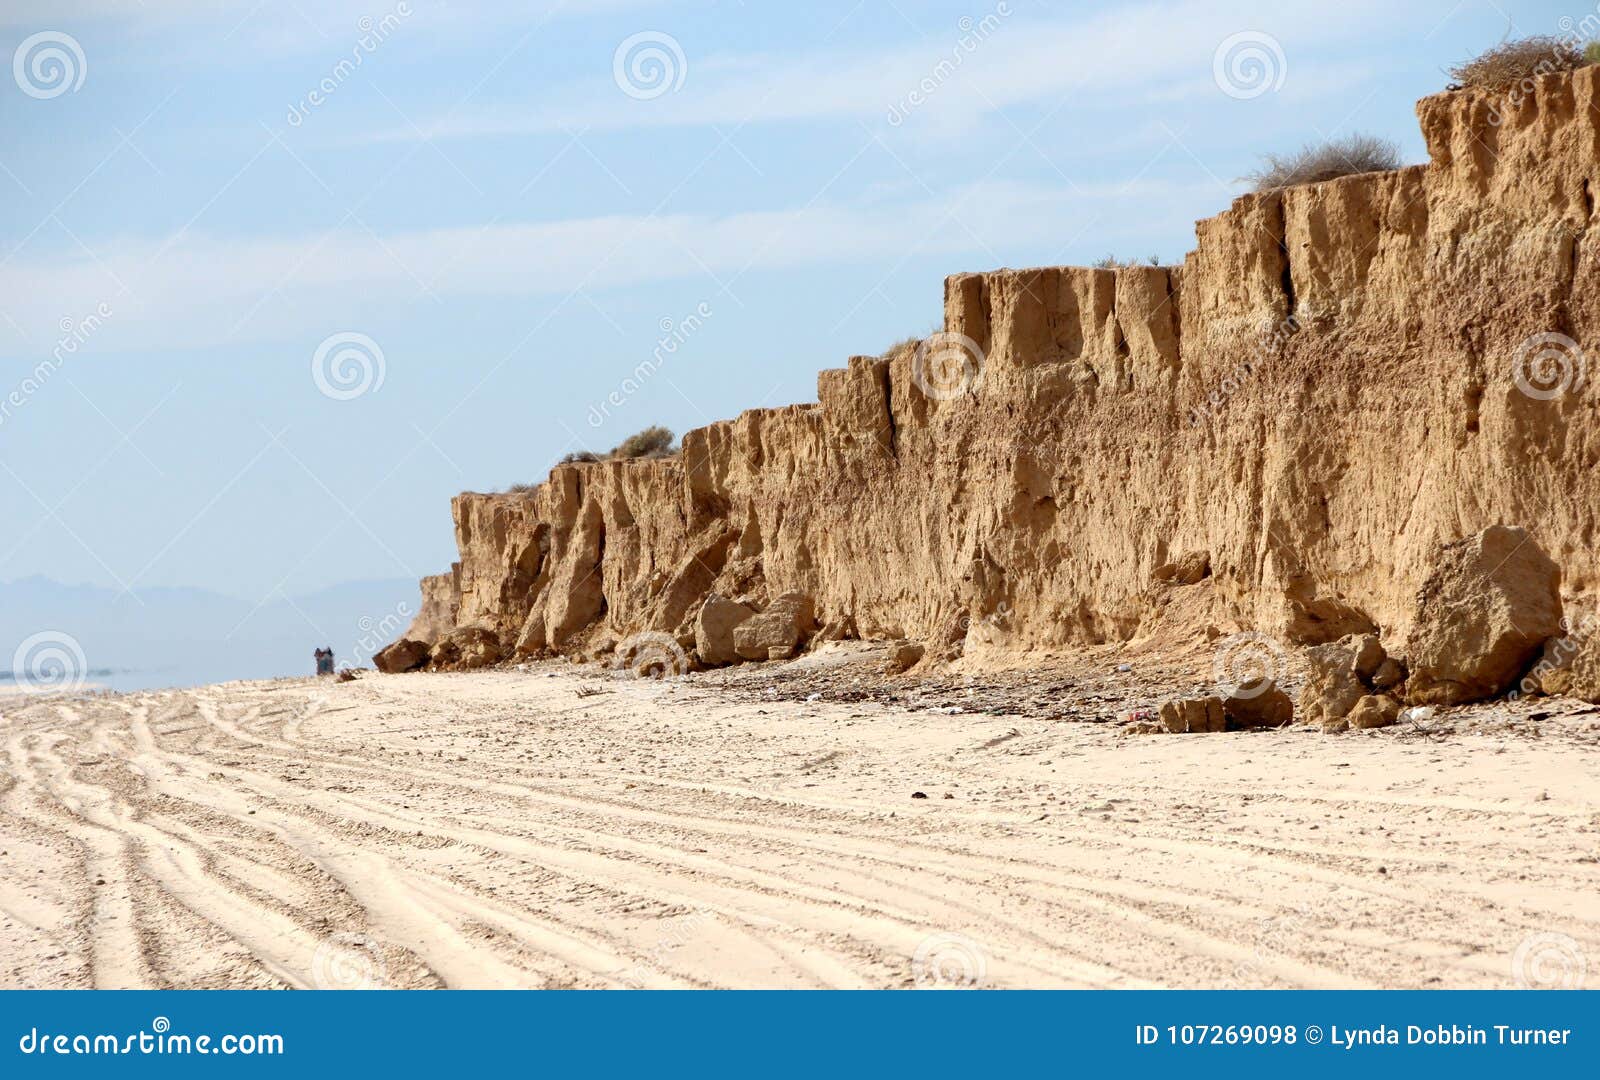 cliffs along shoreline of sea of cortez near el golfo de santa clara, sonora, mexico